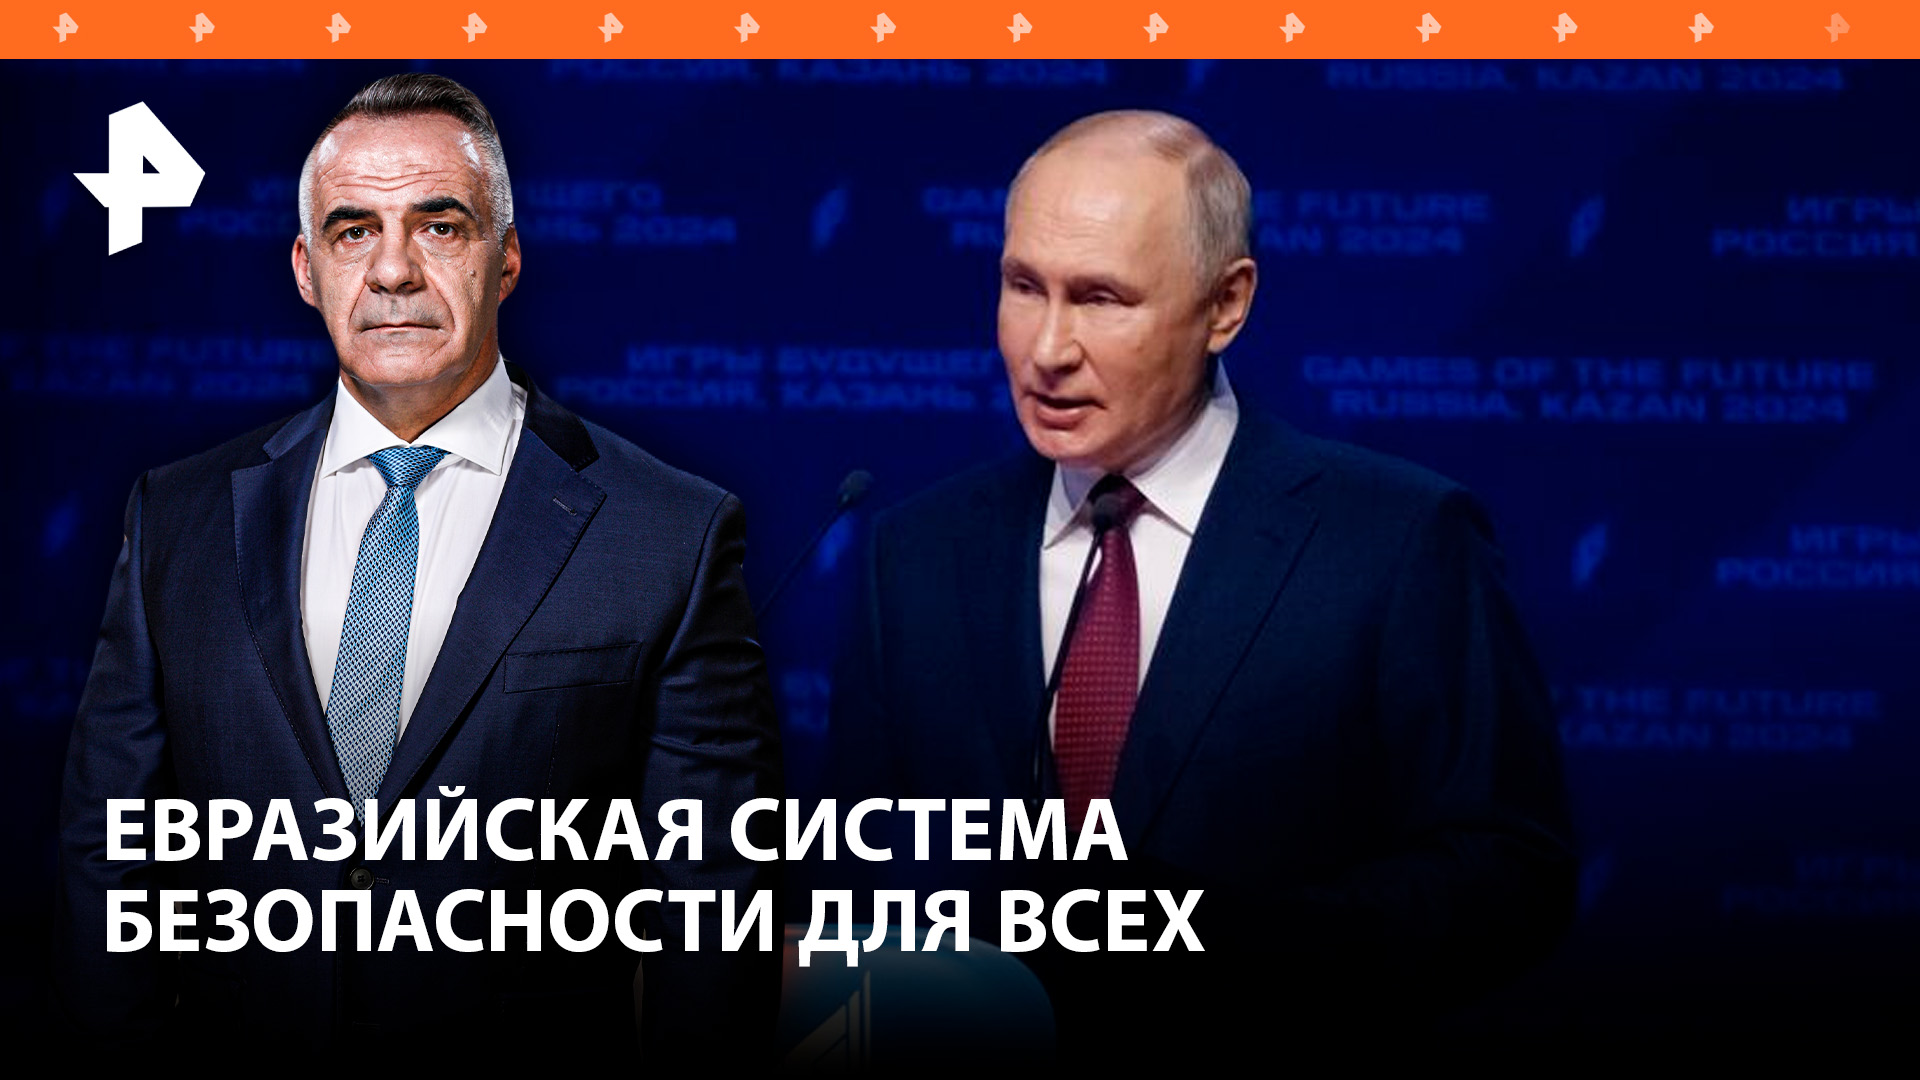 Архитектура евразийской безопасности: идеи Путина и их перспективы / Итоги недели с Петром Марченко